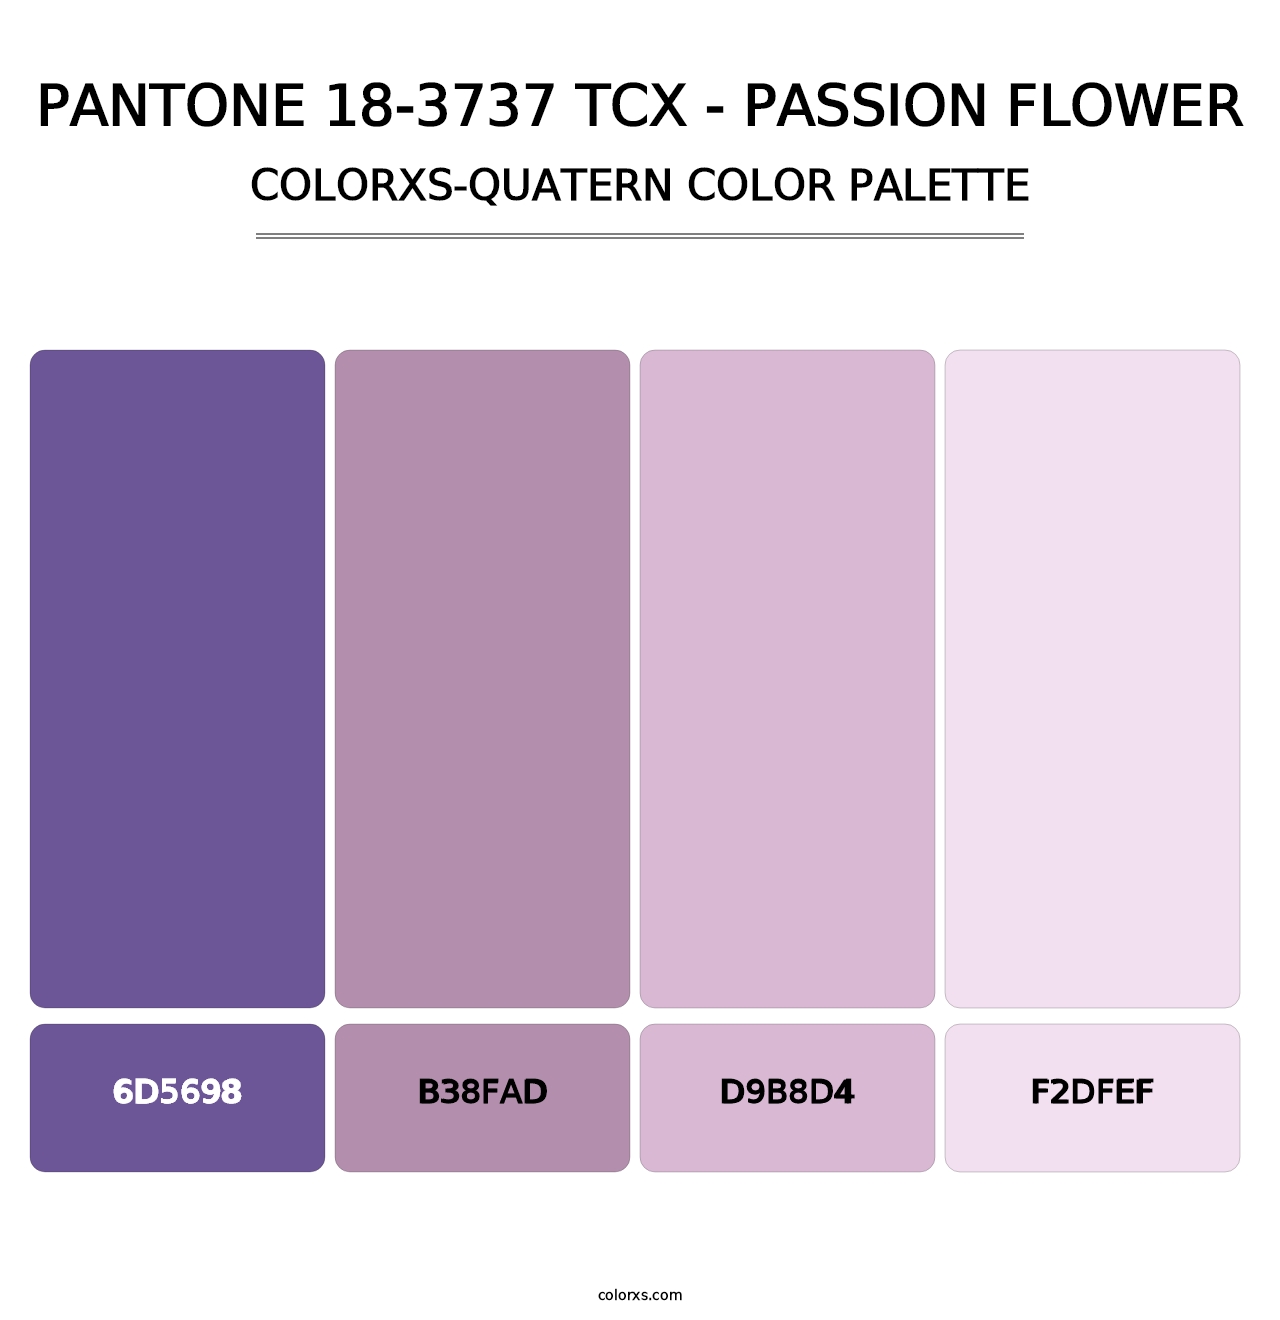 PANTONE 18-3737 TCX - Passion Flower - Colorxs Quatern Palette